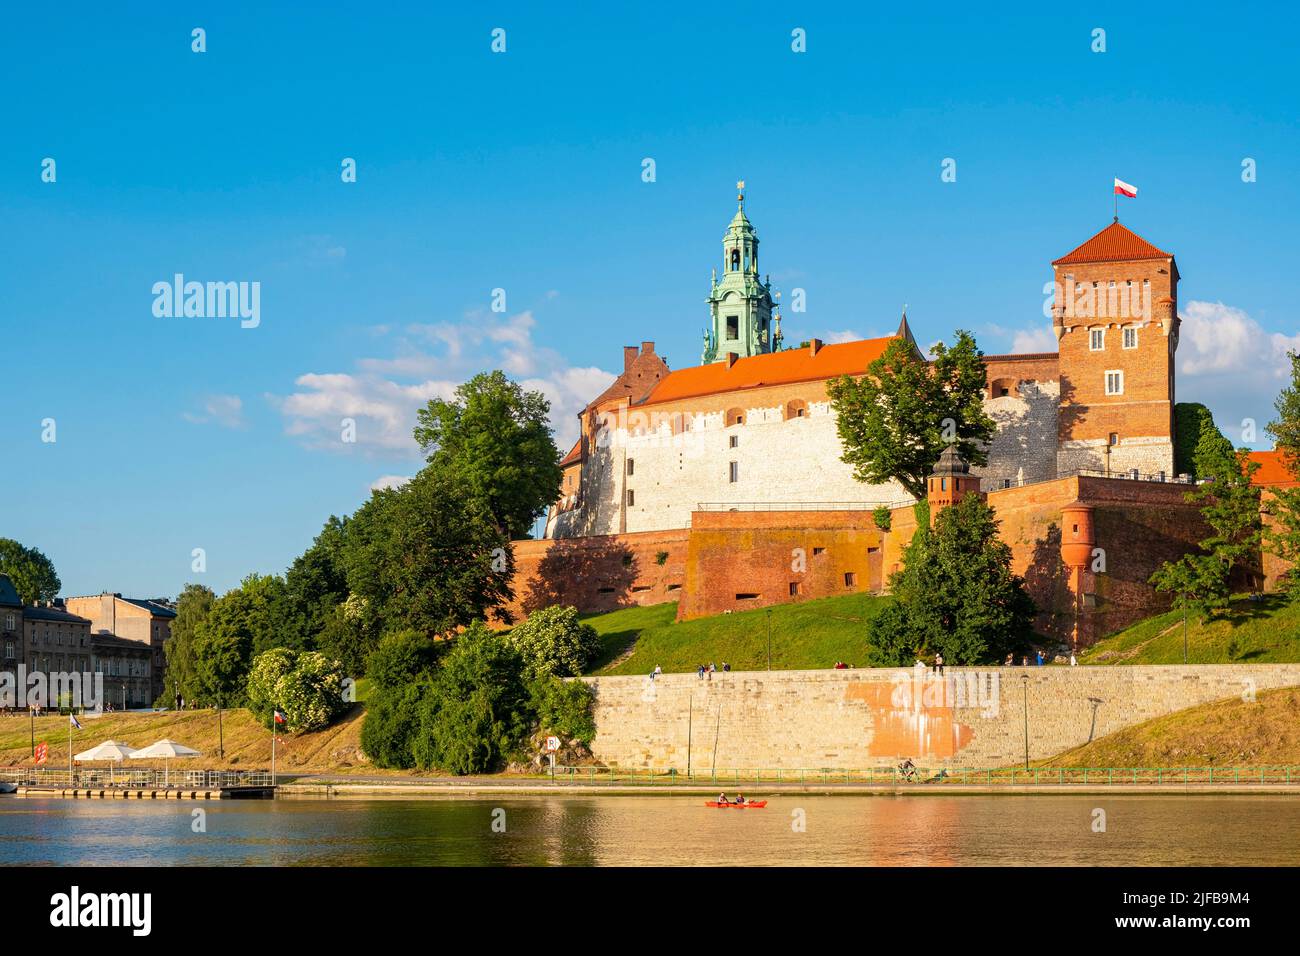 Polonia, Pequeña Polonia, Cracovia, declarada Patrimonio de la Humanidad por la UNESCO, Royal Hill, Castillo de Wawel a orillas del río Vístula Foto de stock